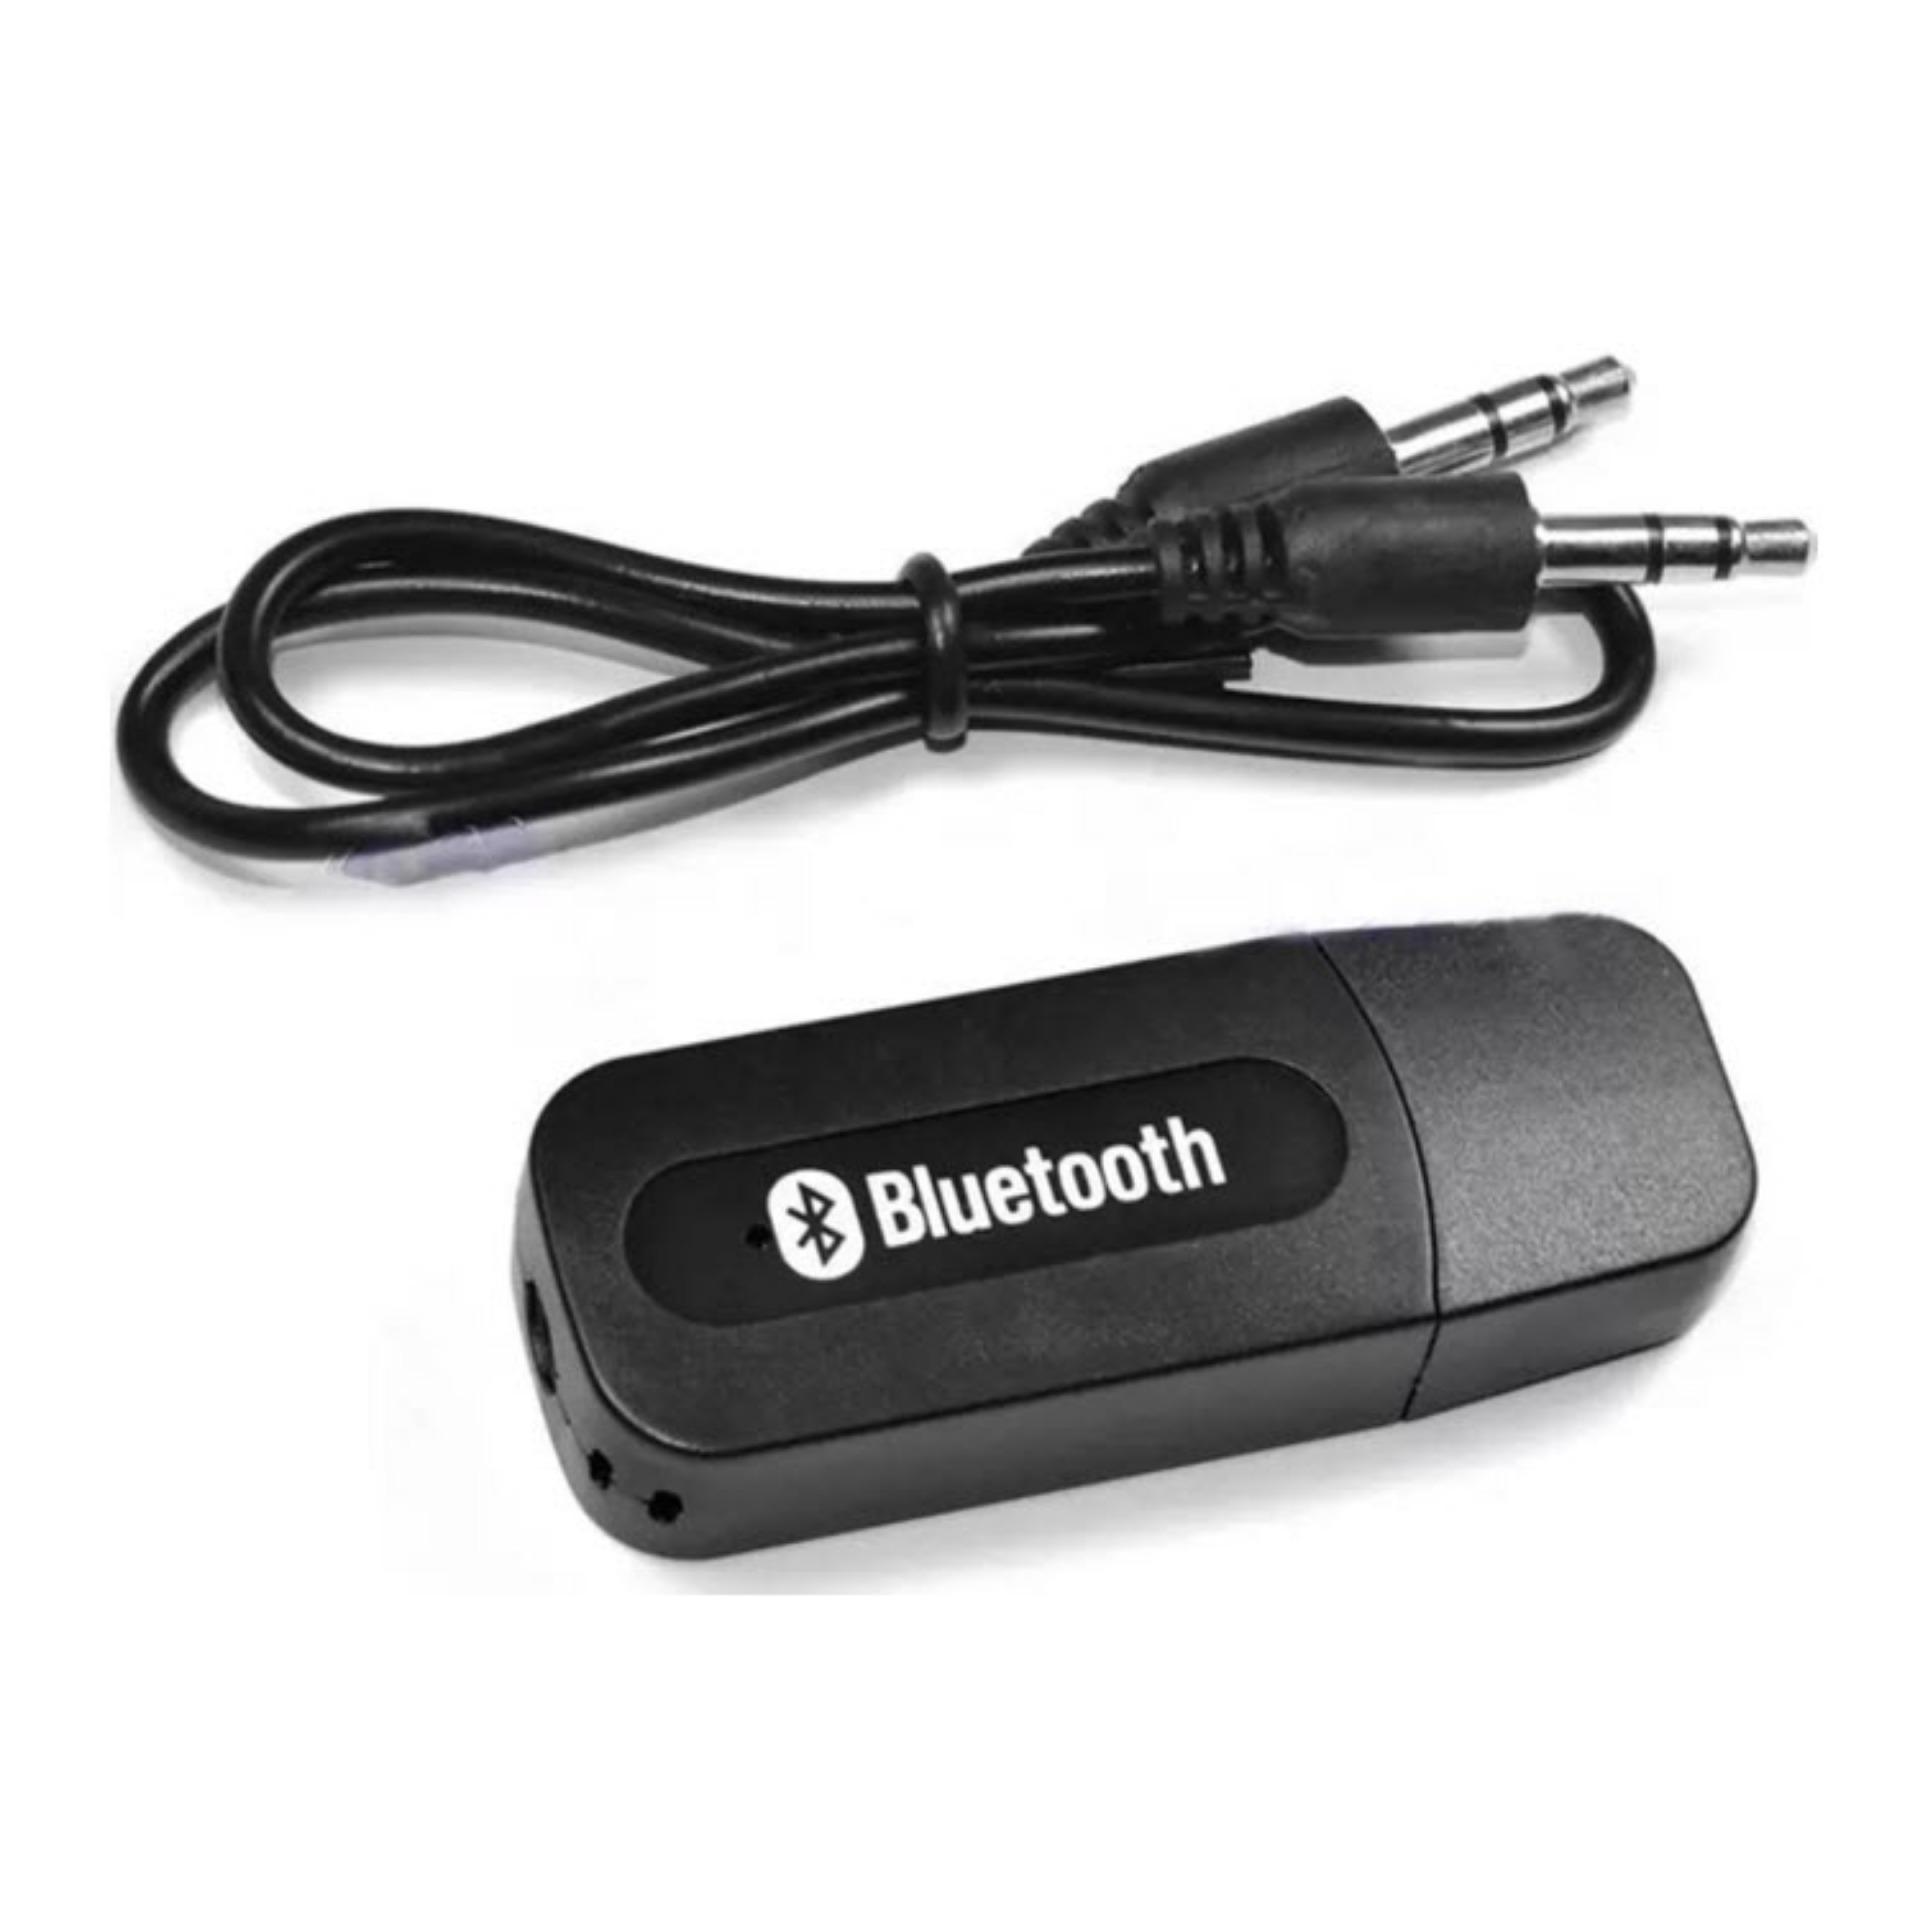 USB tạo bluetooth kết nối âm thanh (Đen)